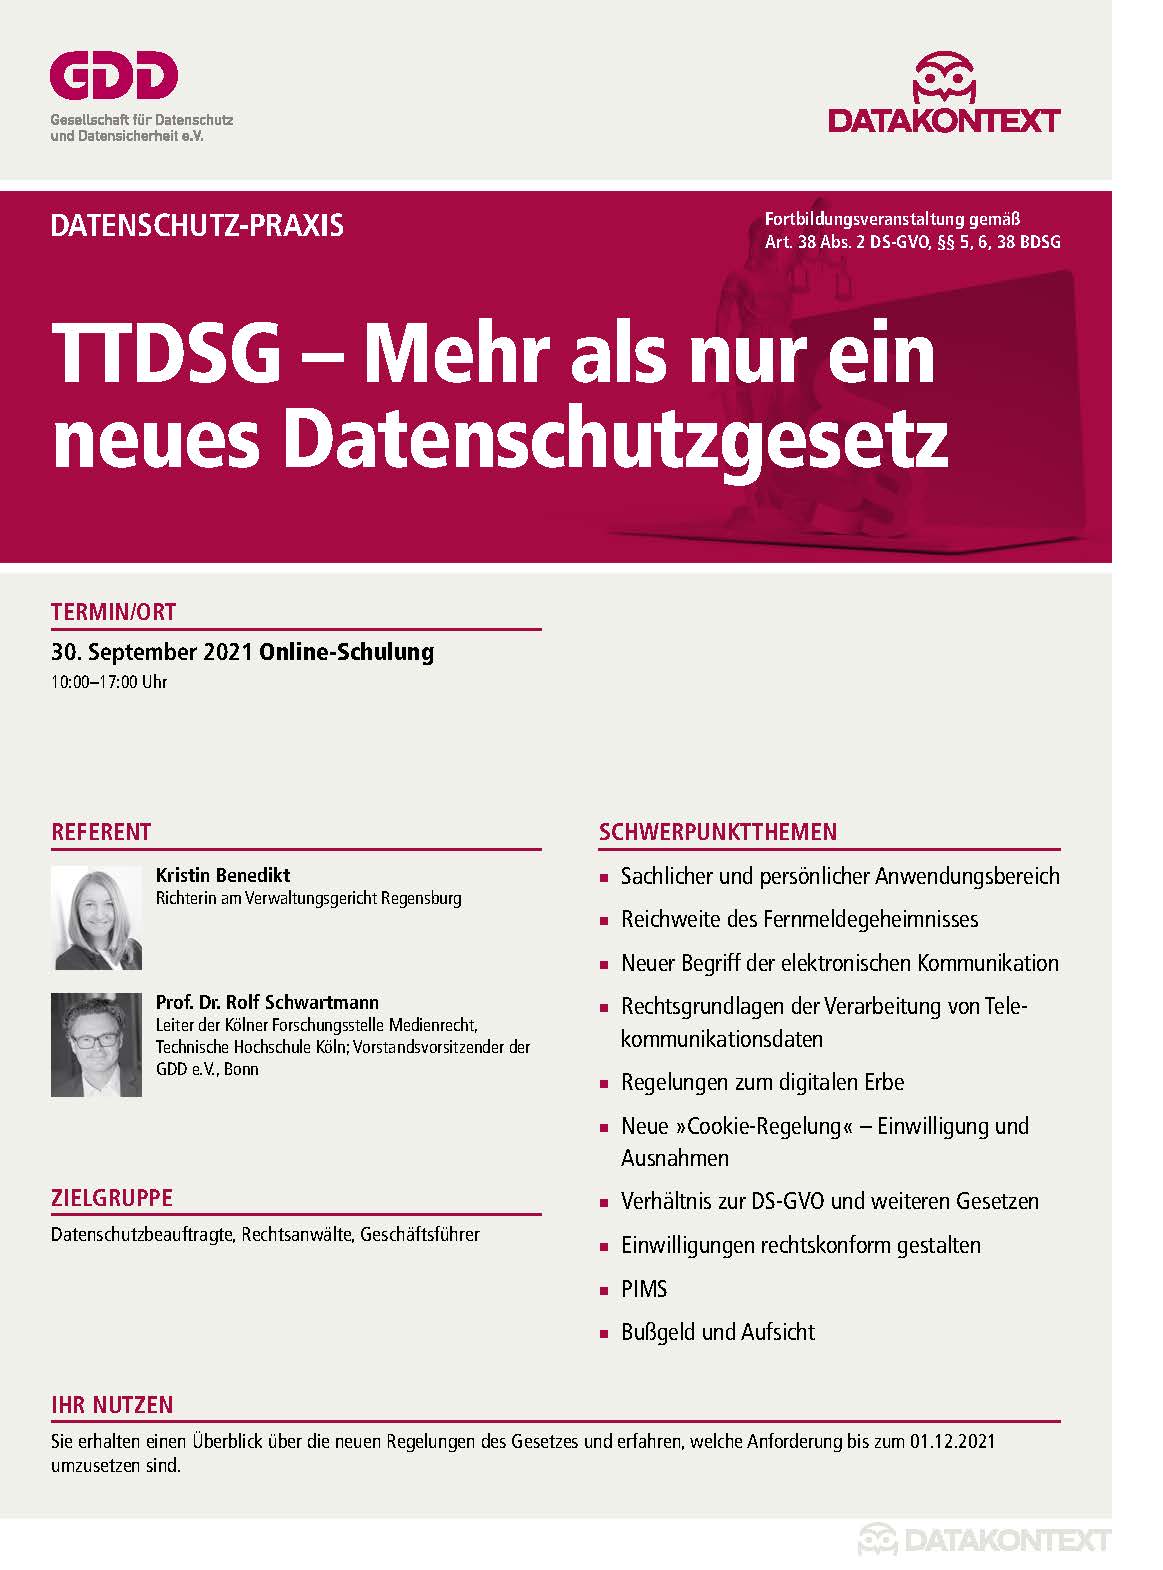 TTDSG – Mehr als nur ein neues Datenschutzgesetz